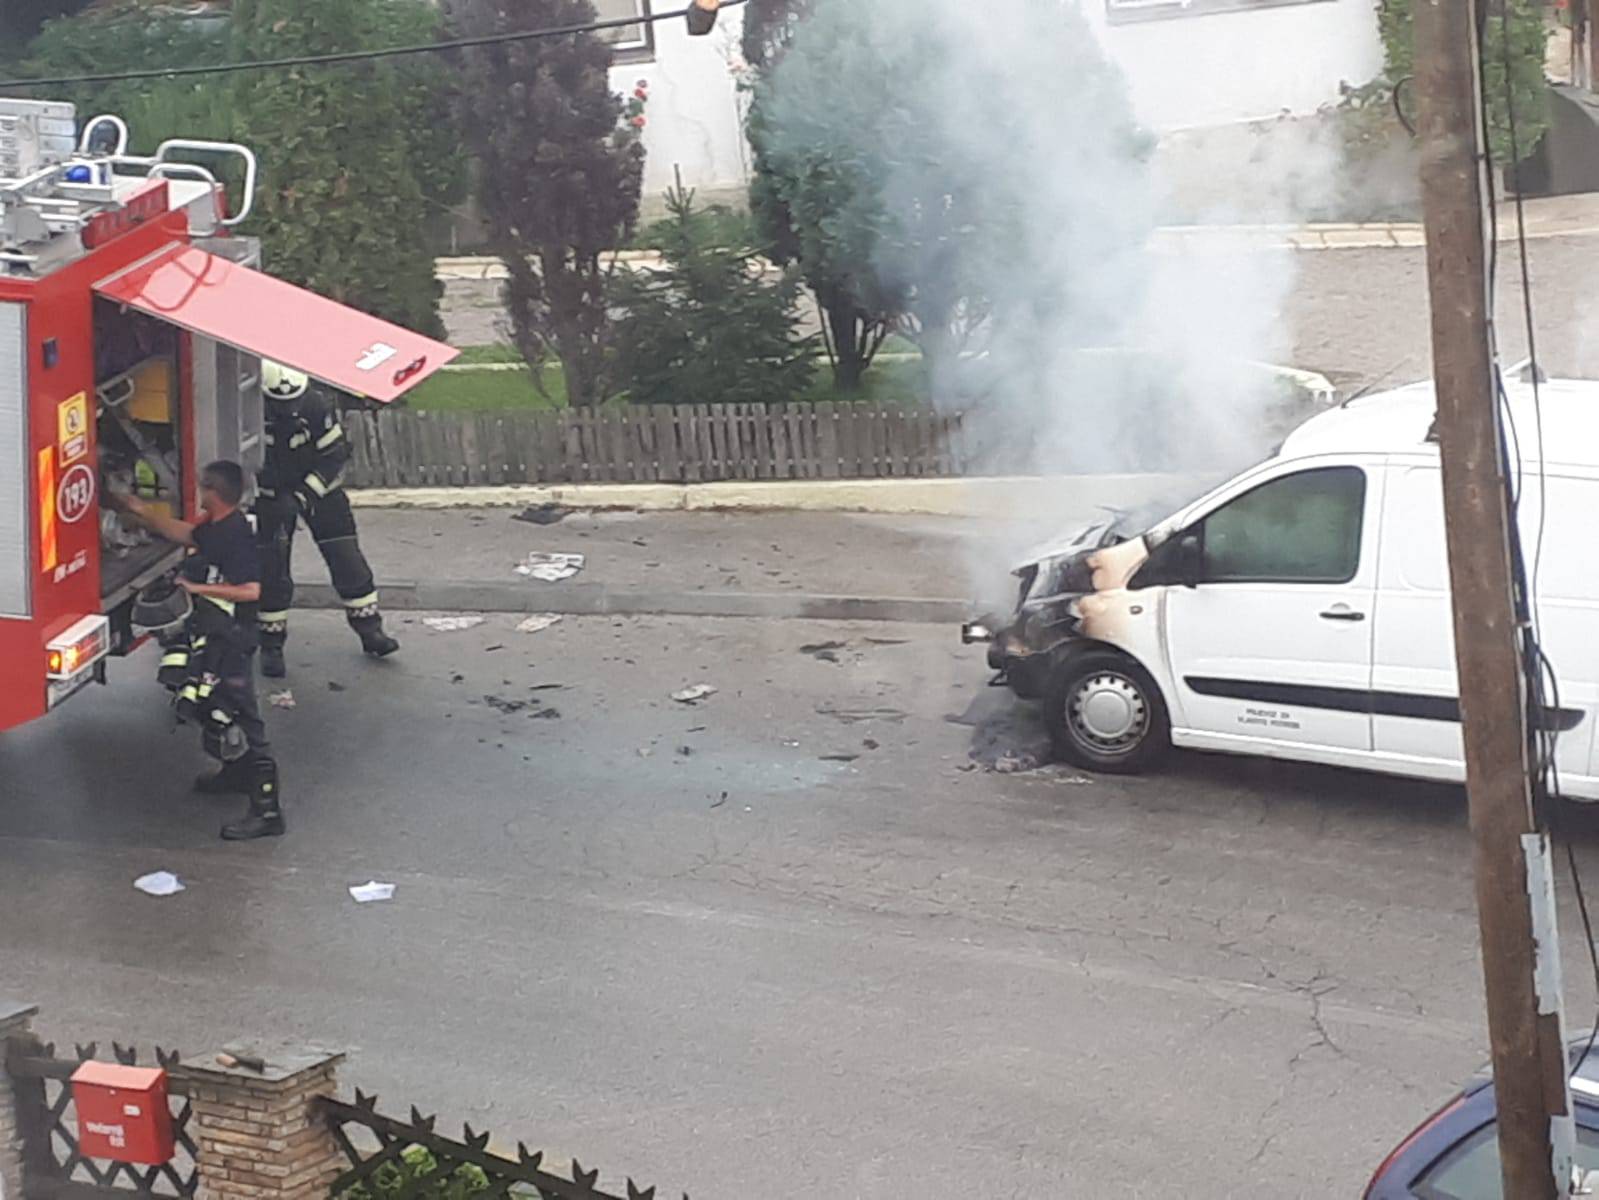 Zapalio se kombi u Zagrebu, stanari ulice pomogli u gašenju